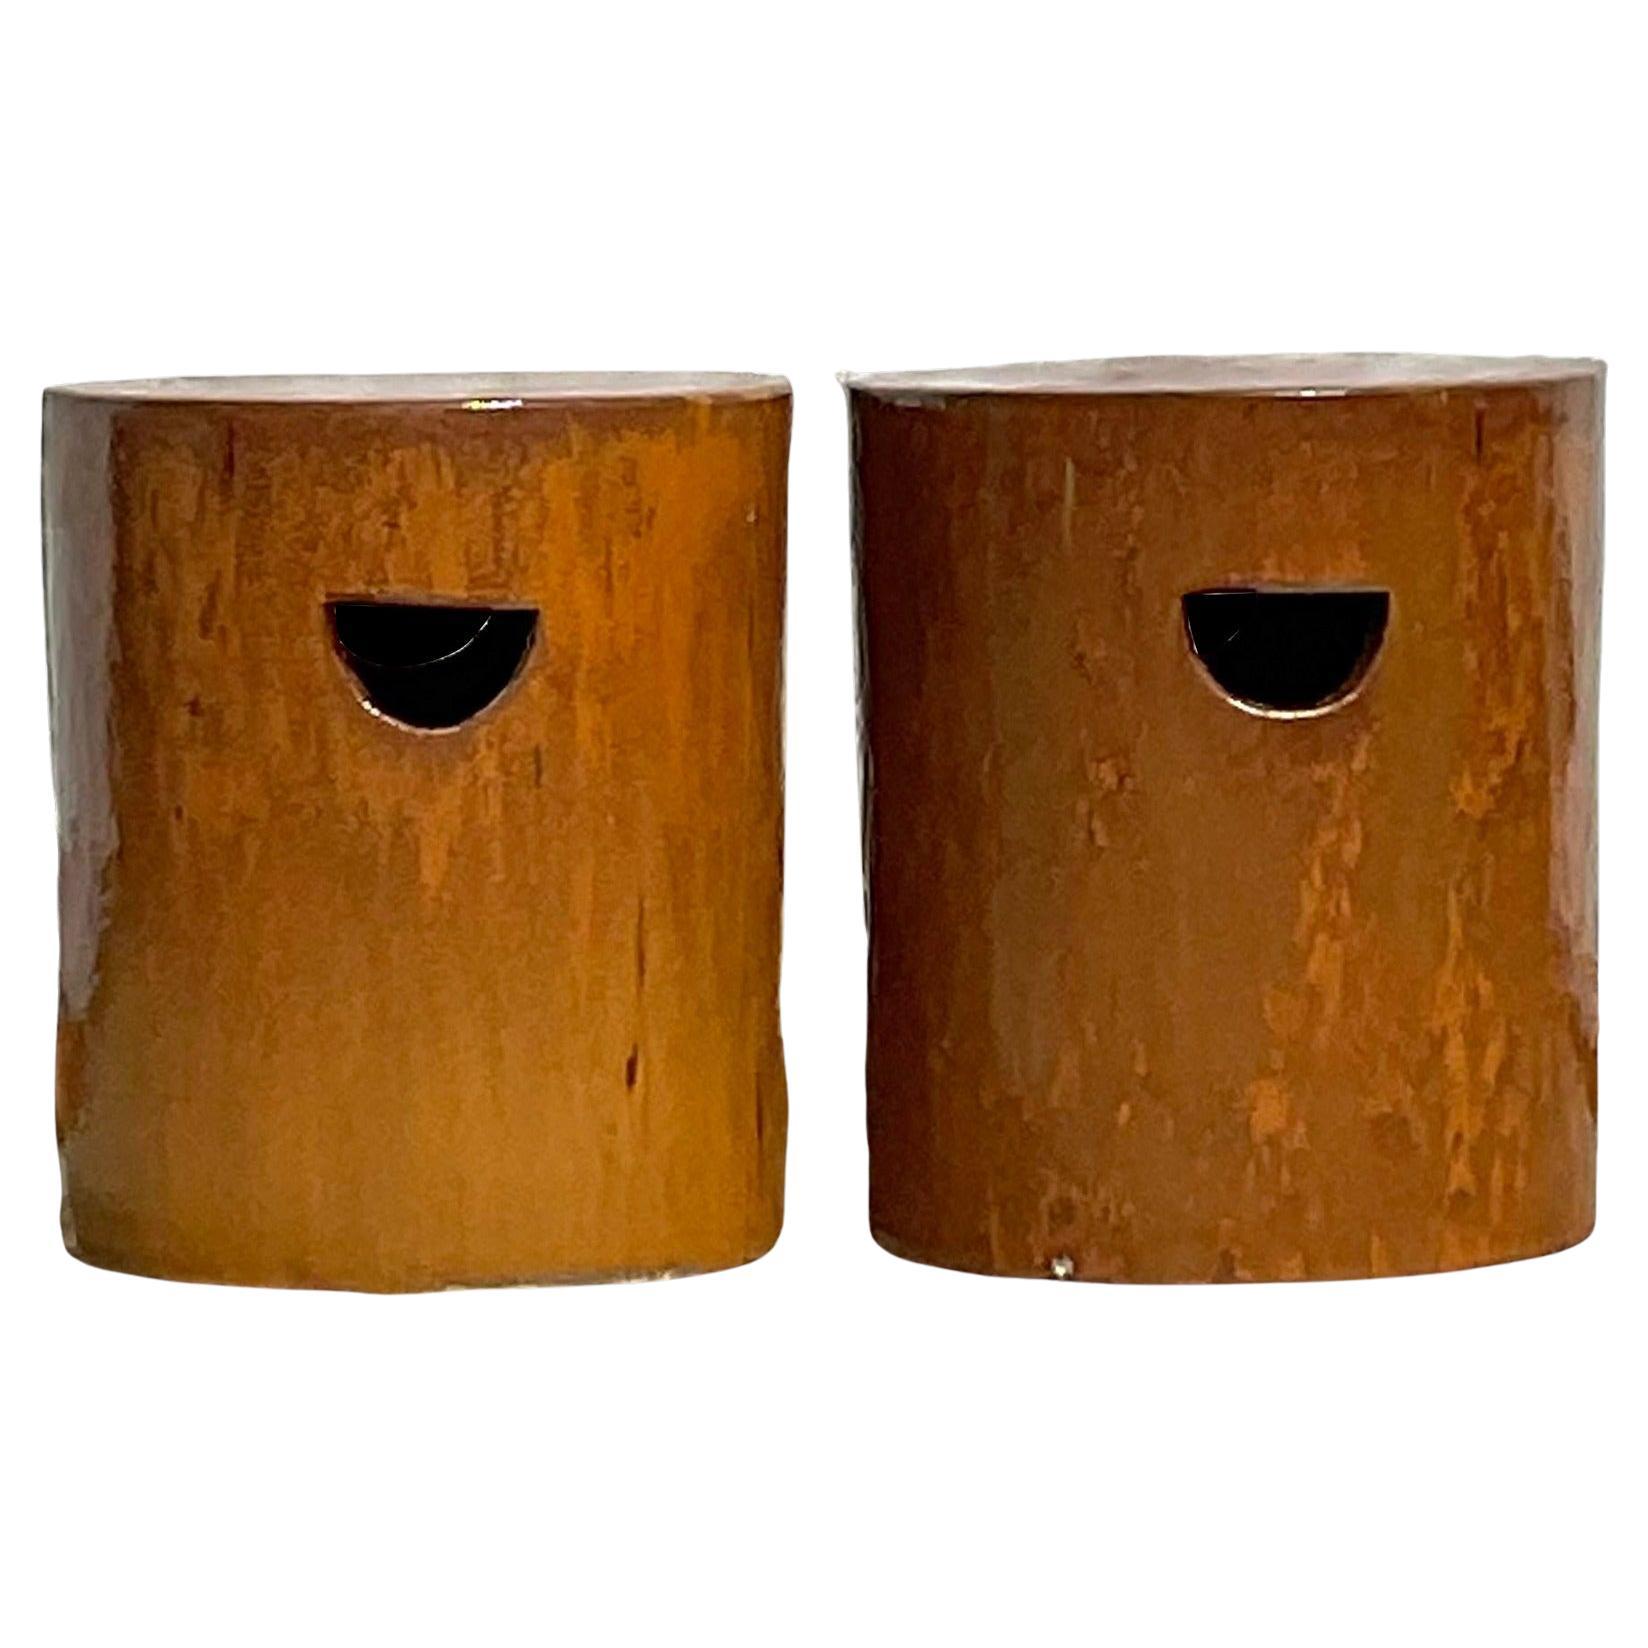 Niedrige Hocker aus glasierter Keramik im Boho-Stil - ein Paar